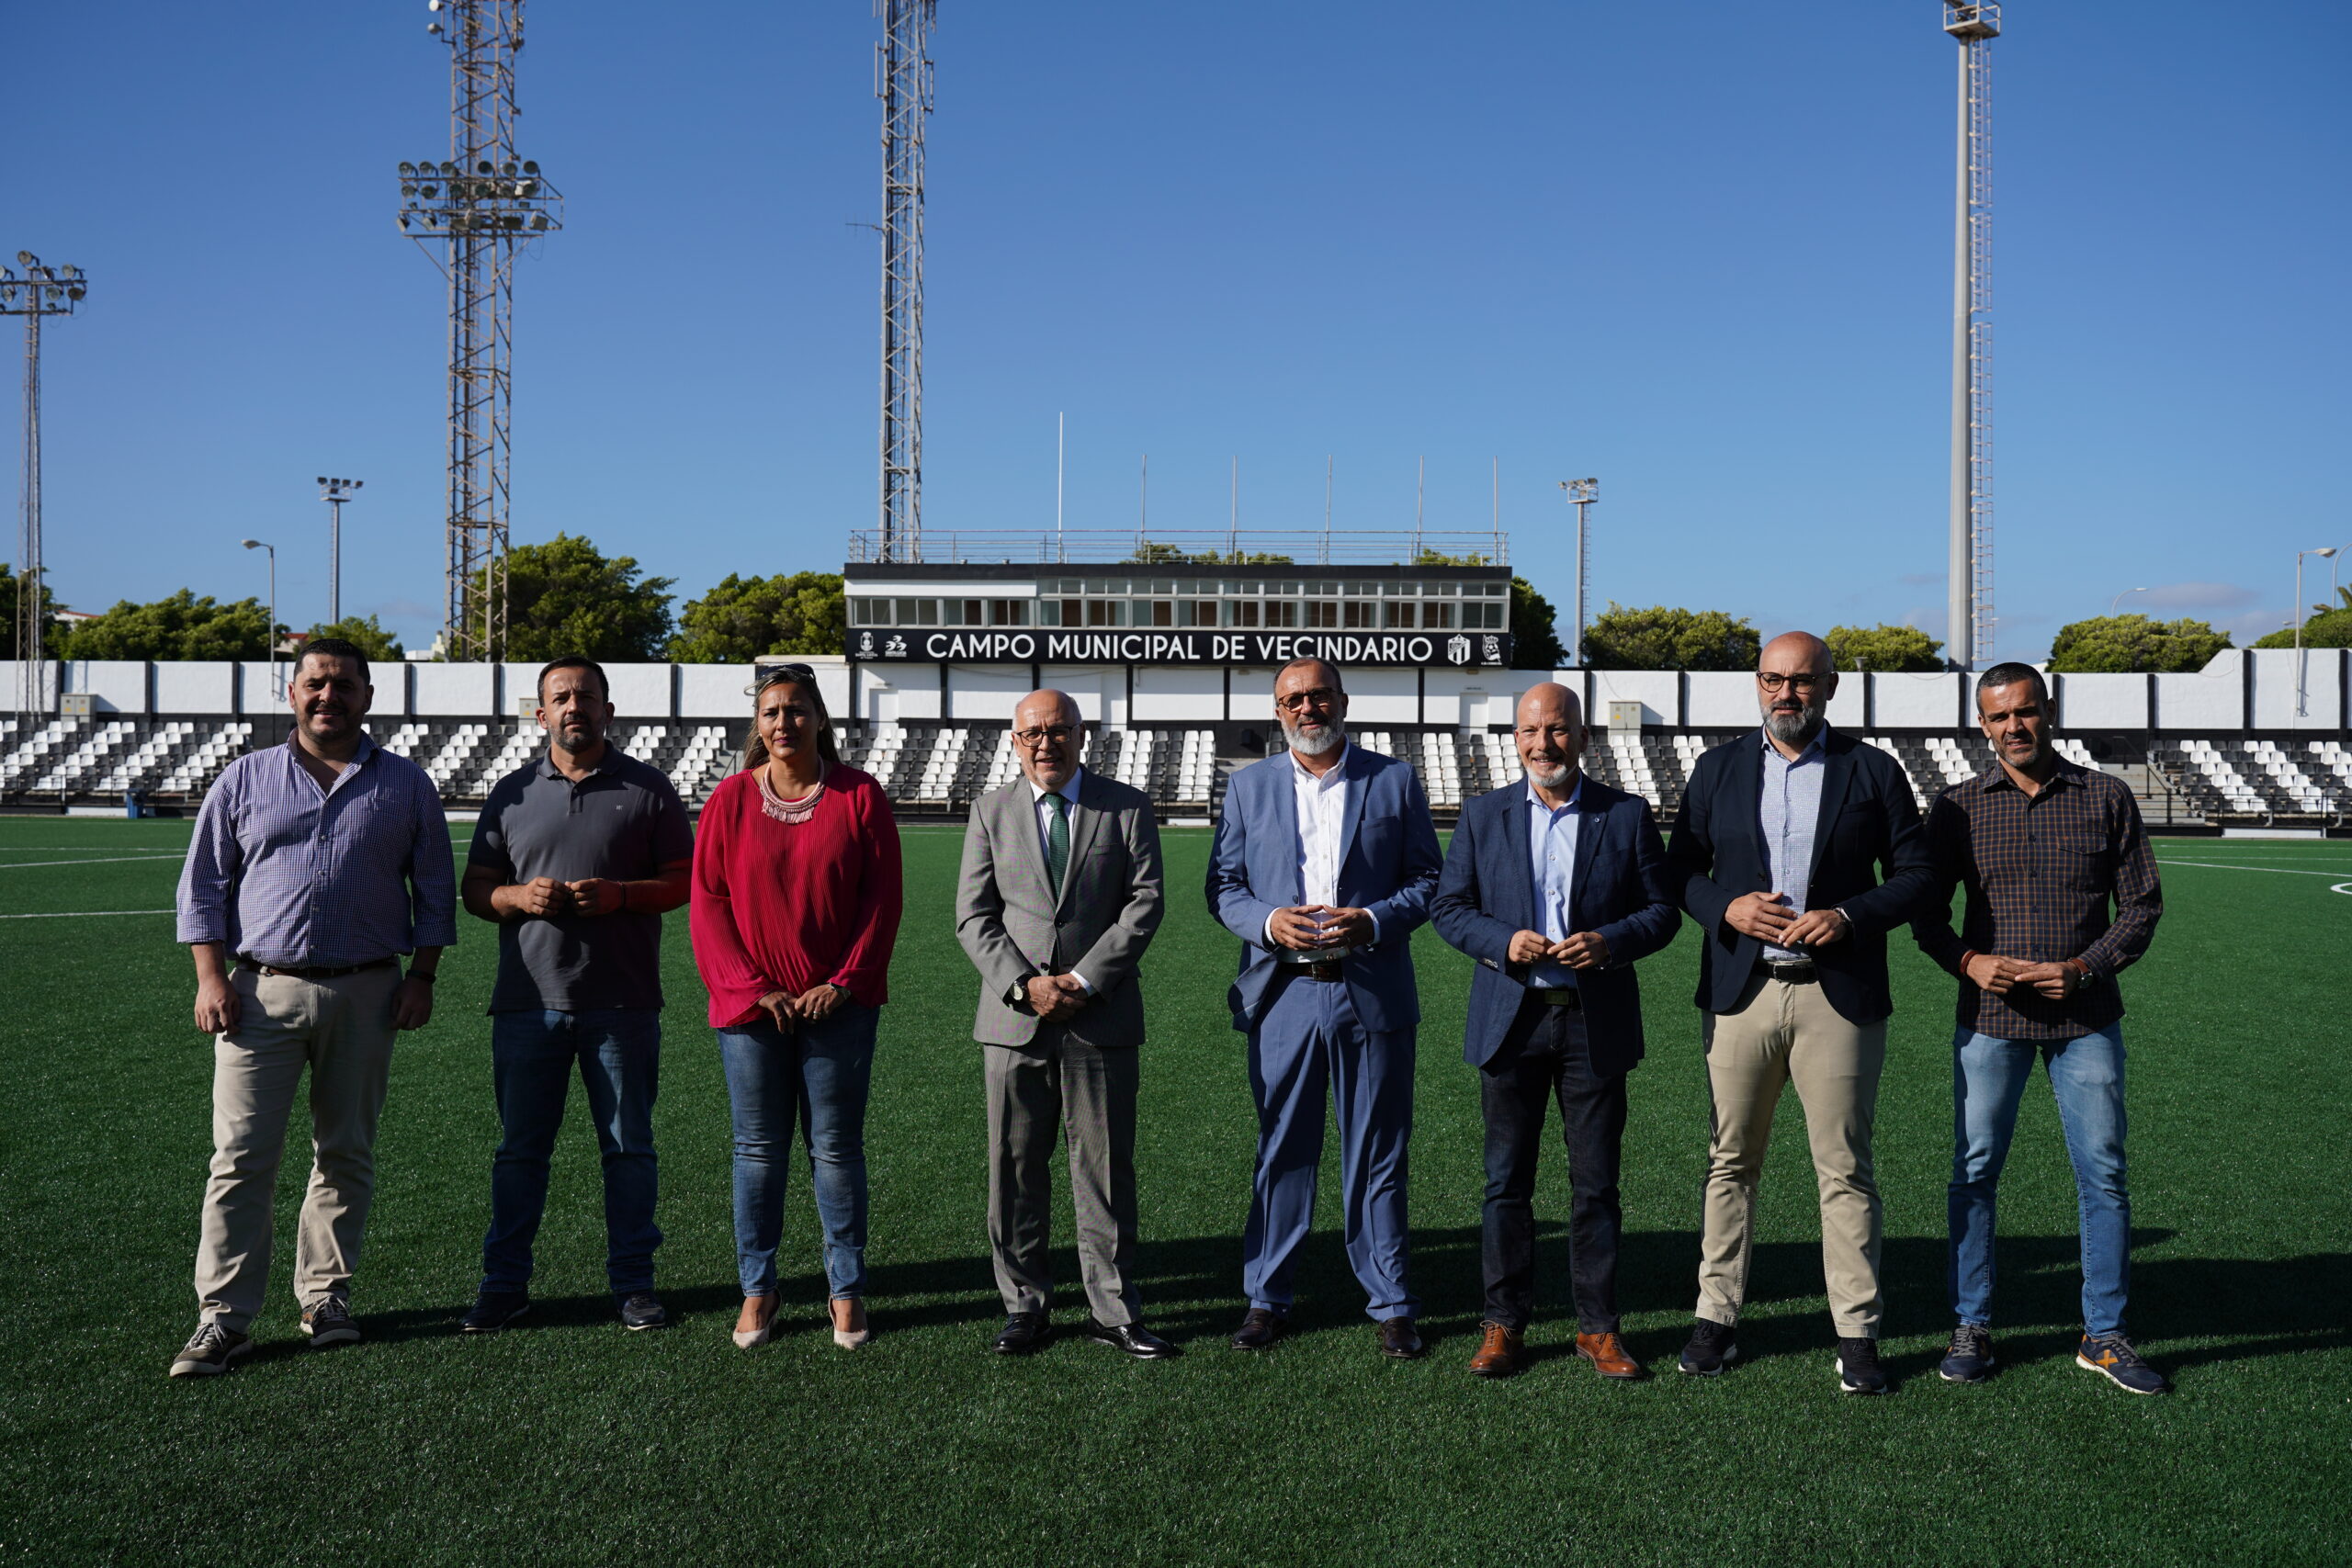 El campo de fútbol de Vecindario reformado con 1,16 millones de euros